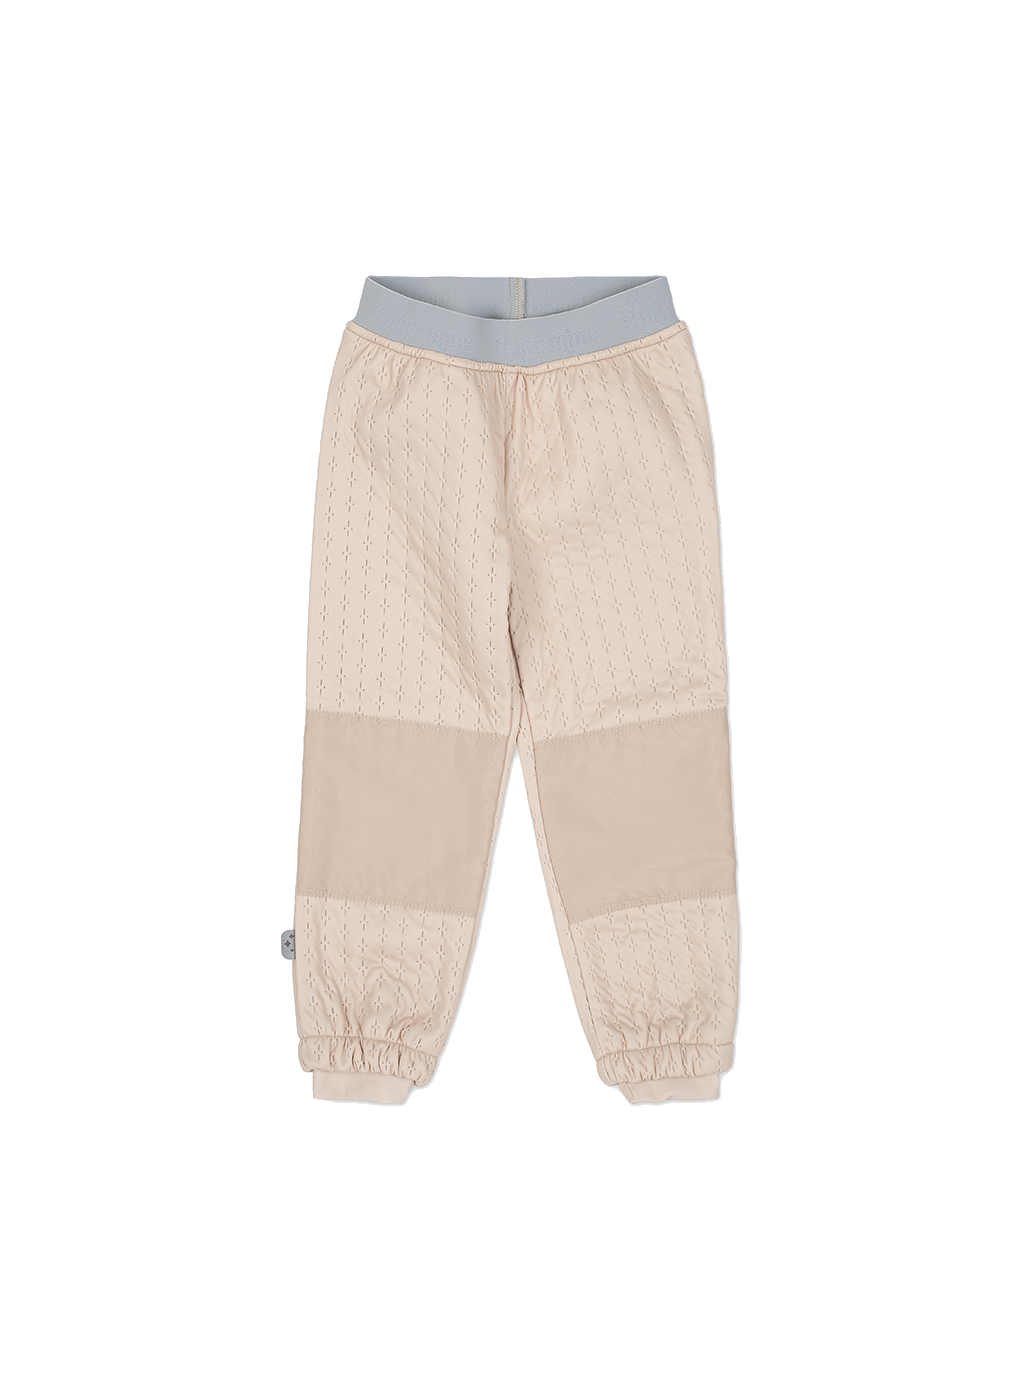 Pantalon thermique